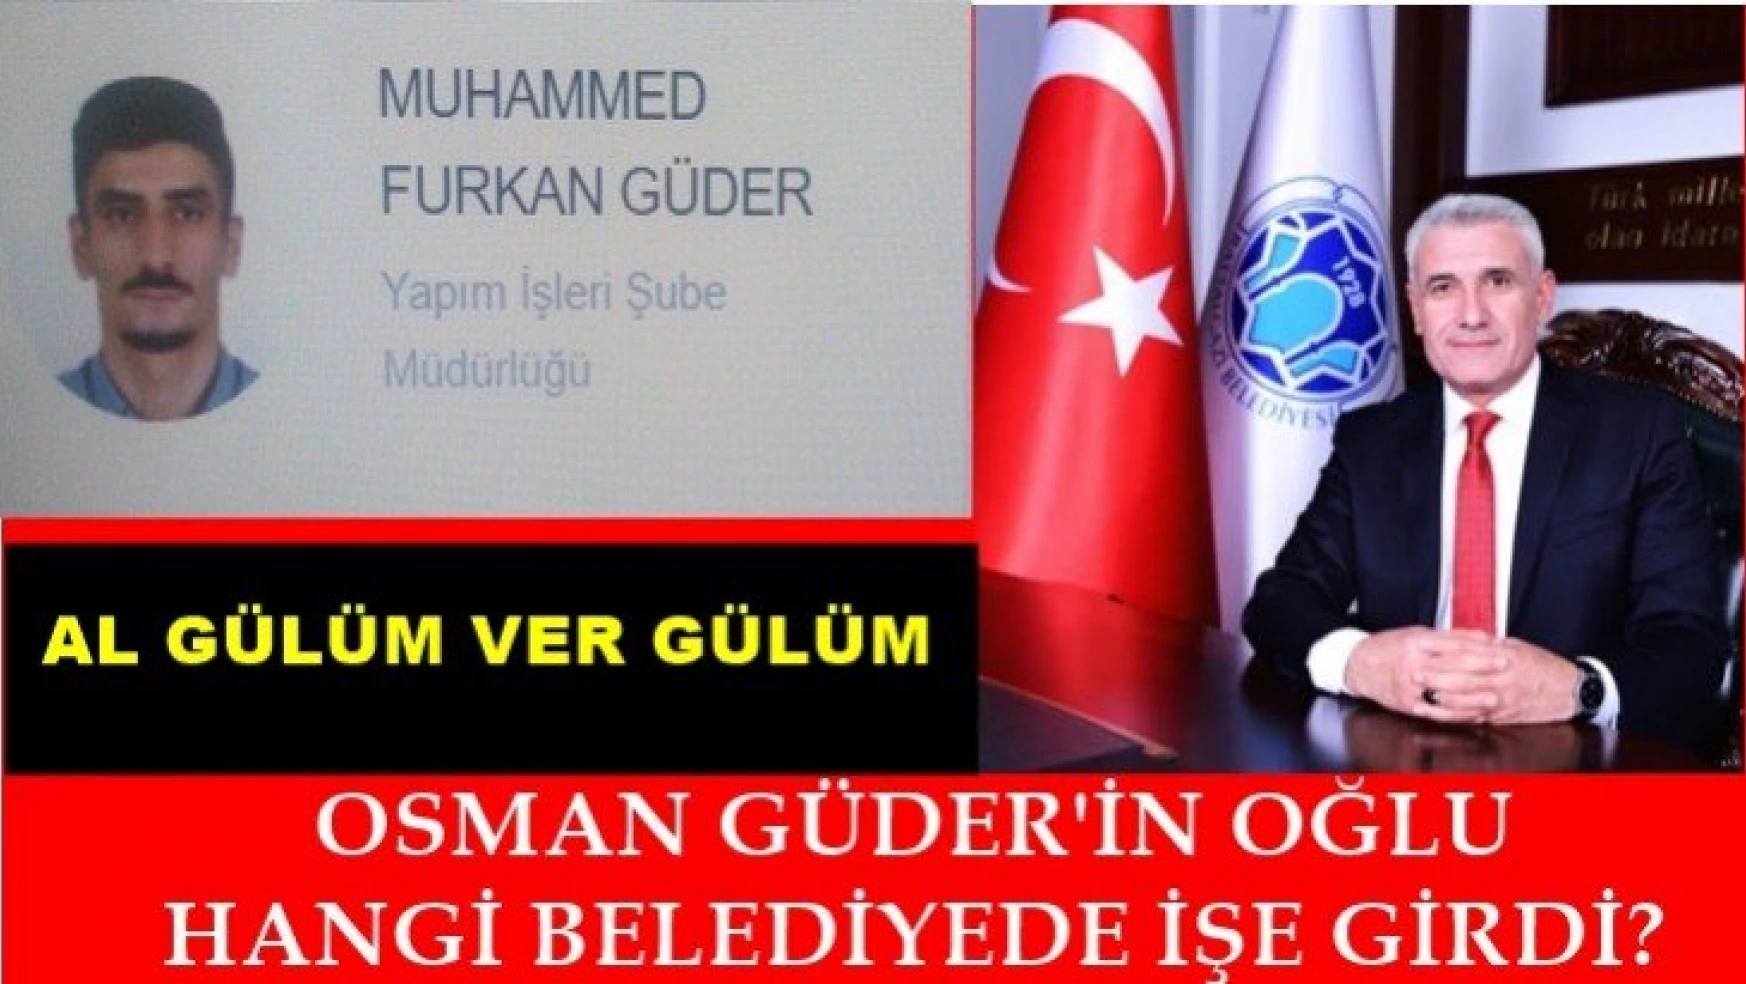 Osman Güder'in oğlu hangi belediyede işe girdi?